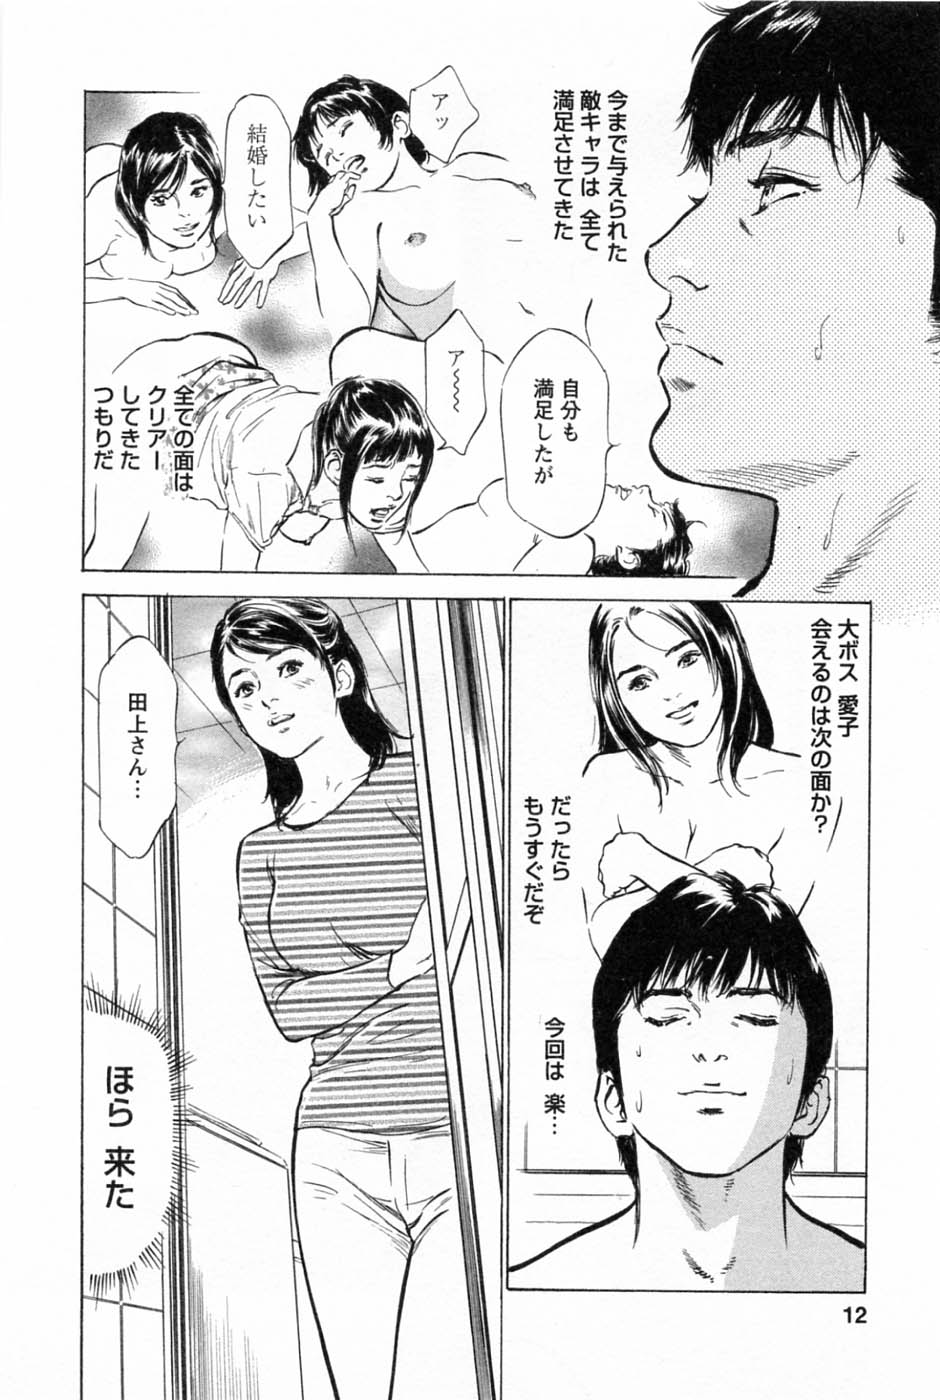 [Tomisawa Chinatsu, Hazuki Kaoru] My Pure Lady Vol.2 page 16 full